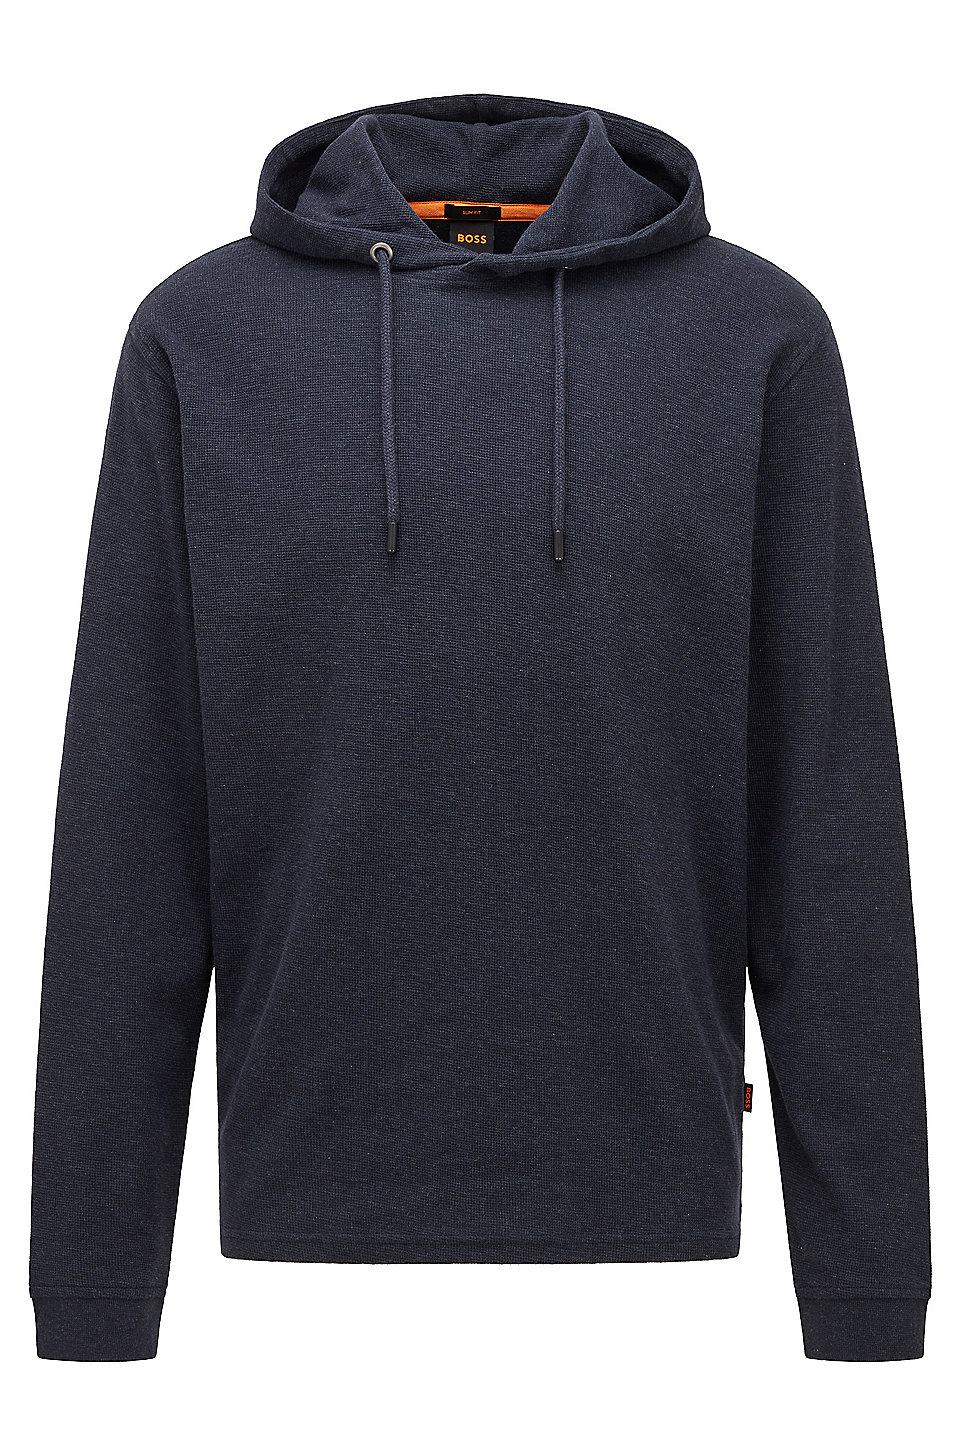 Hugo Boss Men's Premium Cotton Sweater Zip Up Sweatshirt Track Jacket 